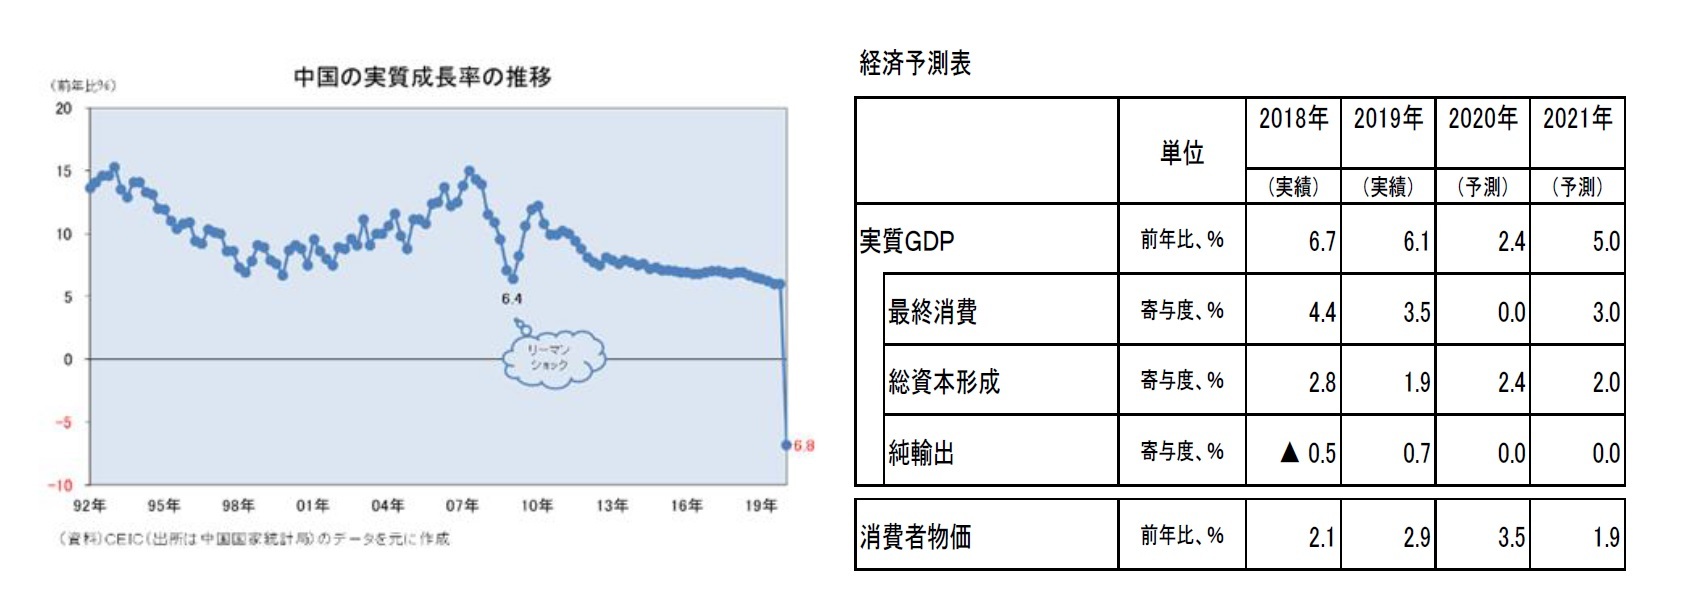 中国の実質成長率の推移/経済予測表